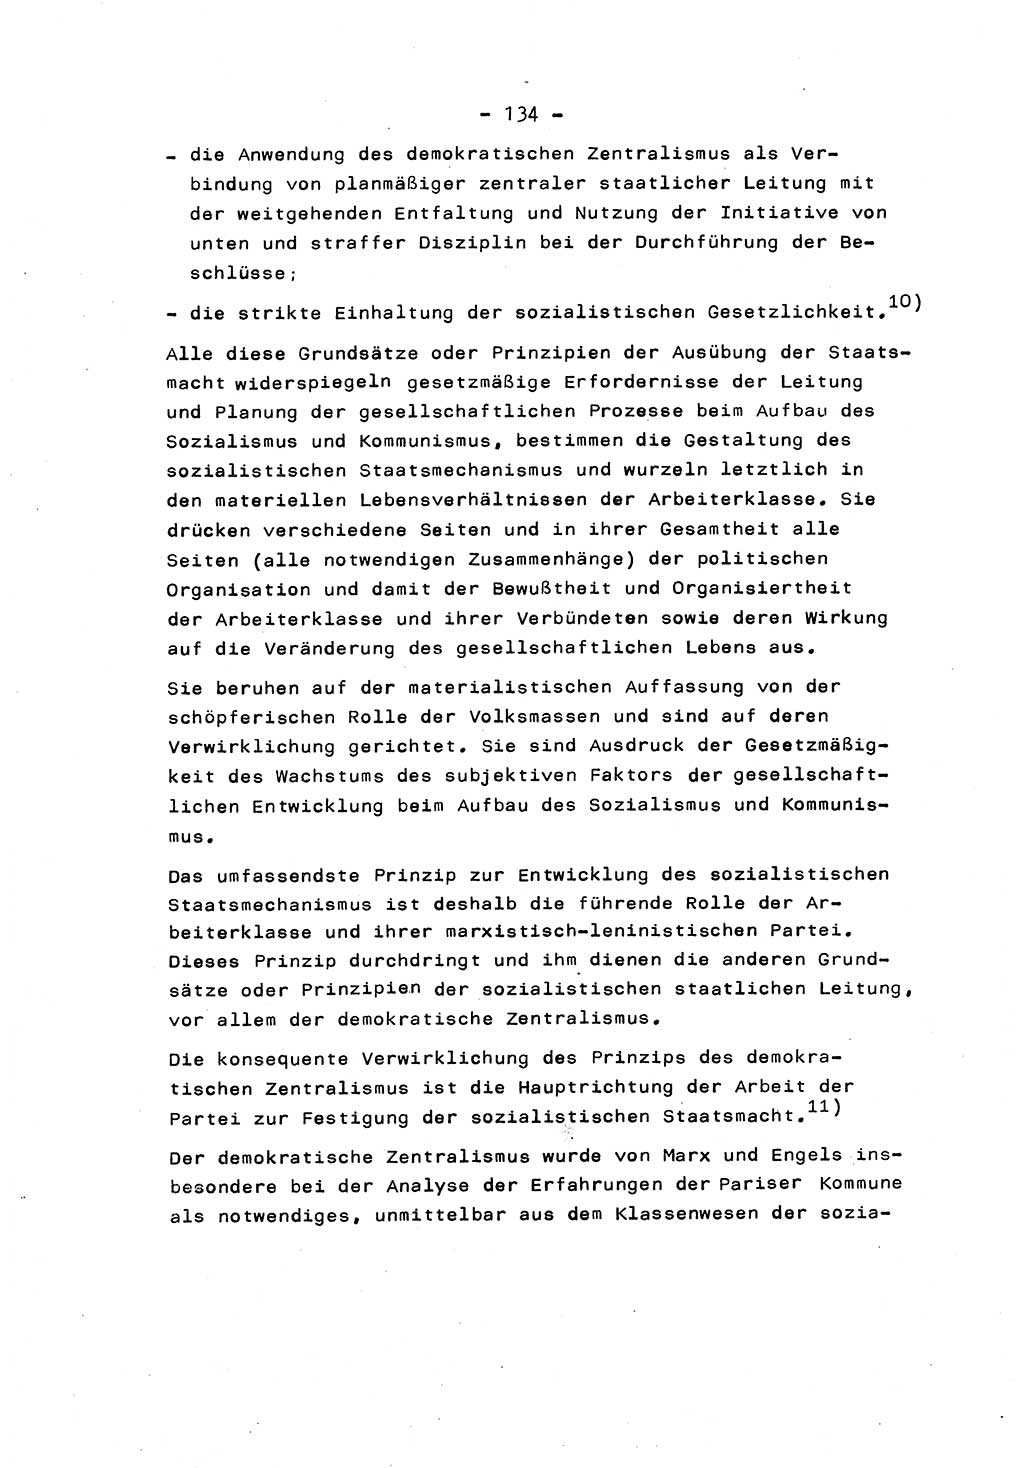 Marxistisch-leninistische Staats- und Rechtstheorie [Deutsche Demokratische Republik (DDR)] 1975, Seite 134 (ML St.-R.-Th. DDR 1975, S. 134)